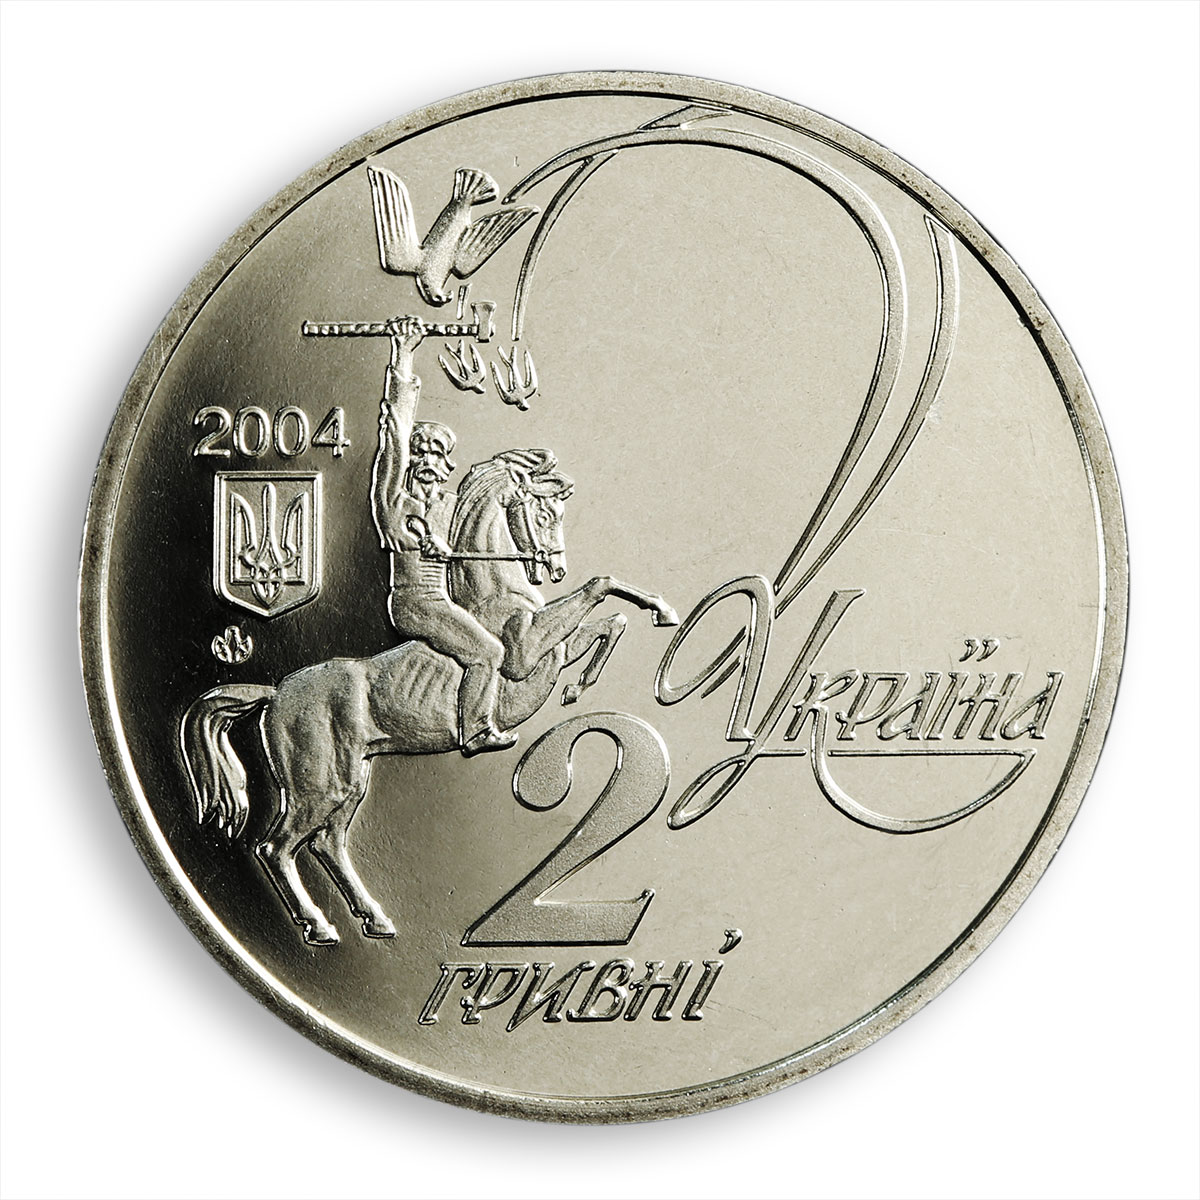 Ukraine 2 hryvnia Yurii (Yuriy) Fedkovych poet writer folklore nickel coin 2004